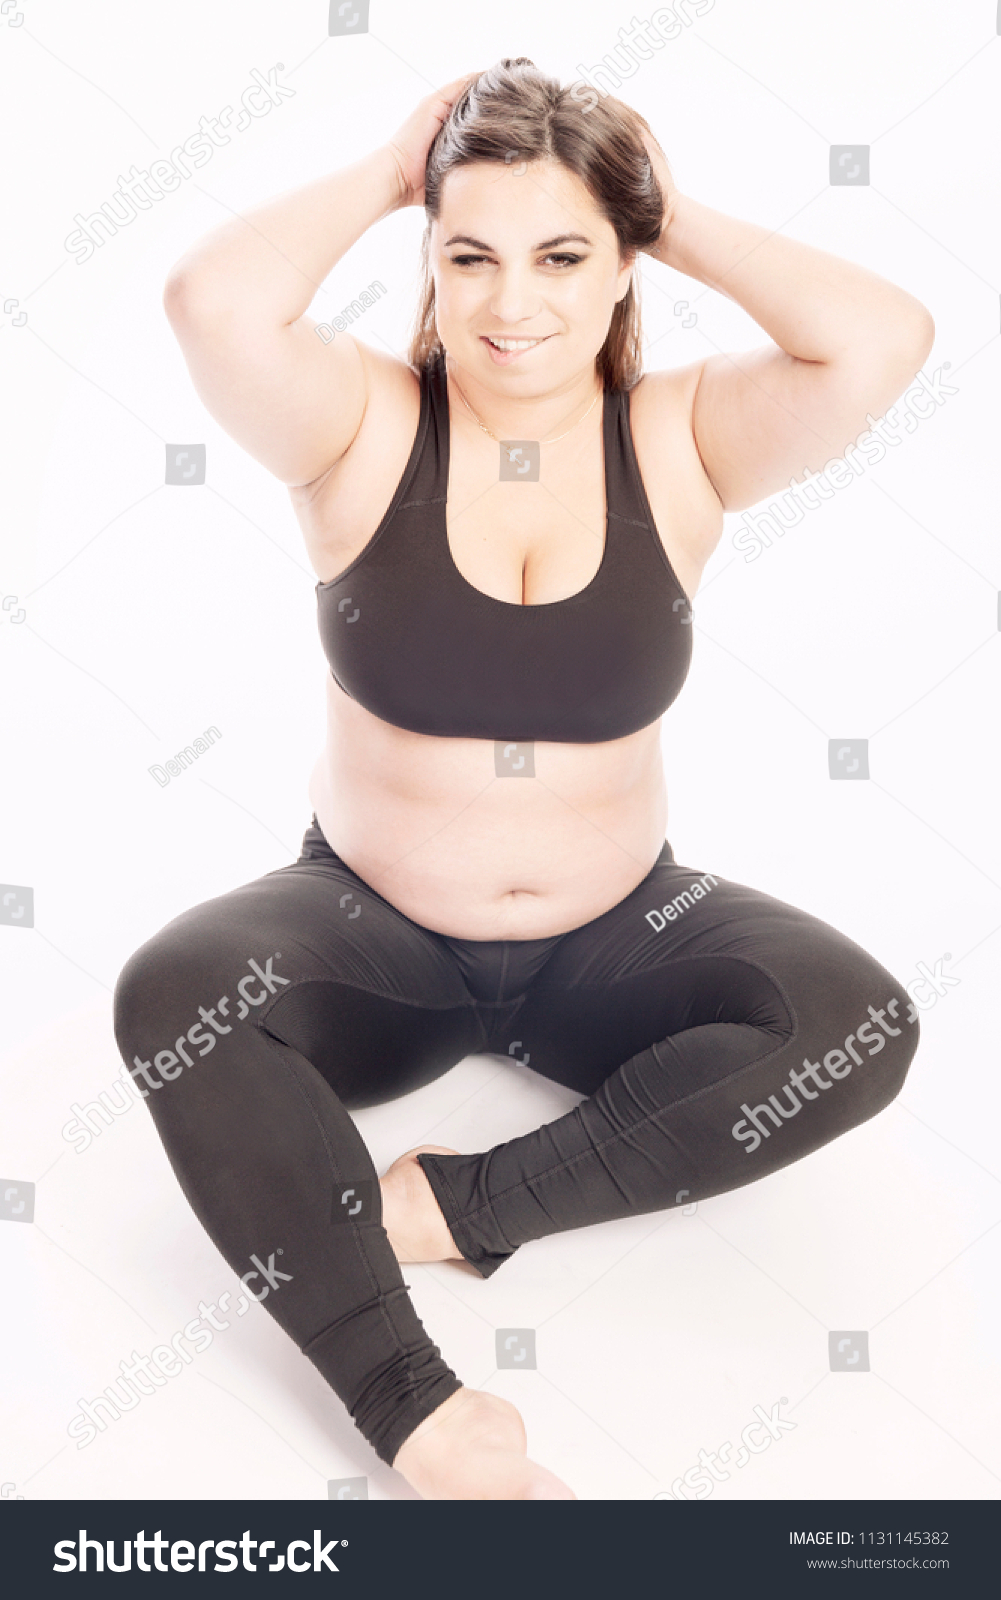 dan preston share young fat girl sex photos